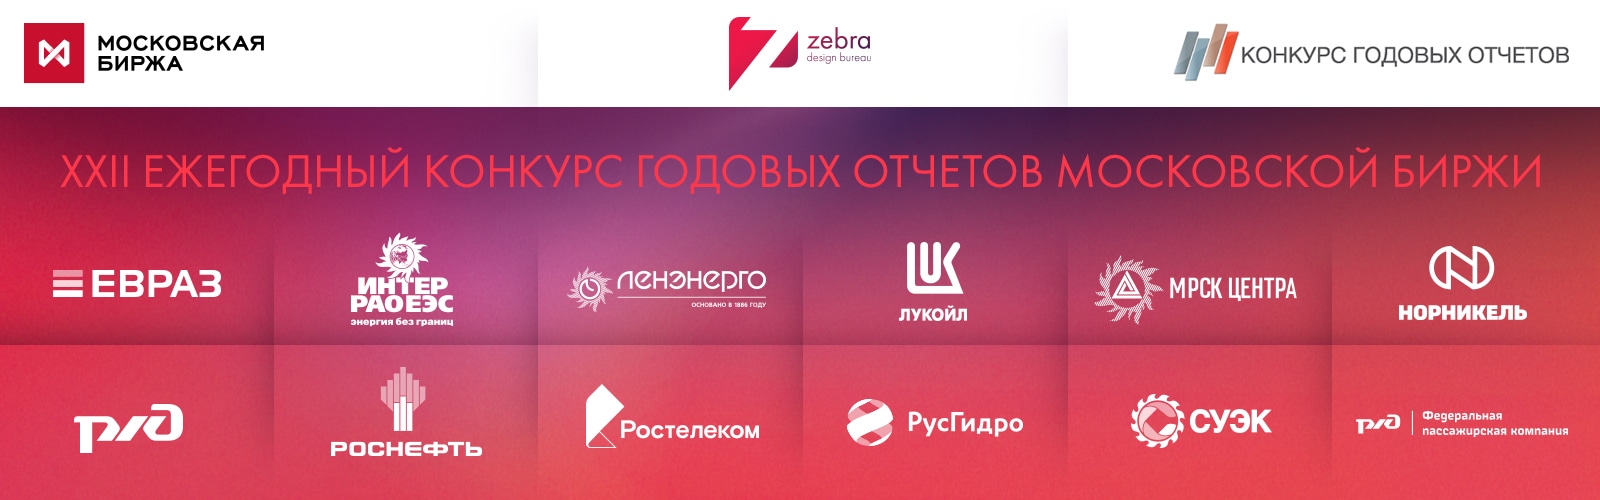 «Зебра» достигает новых высот на конкурсе Московской биржи